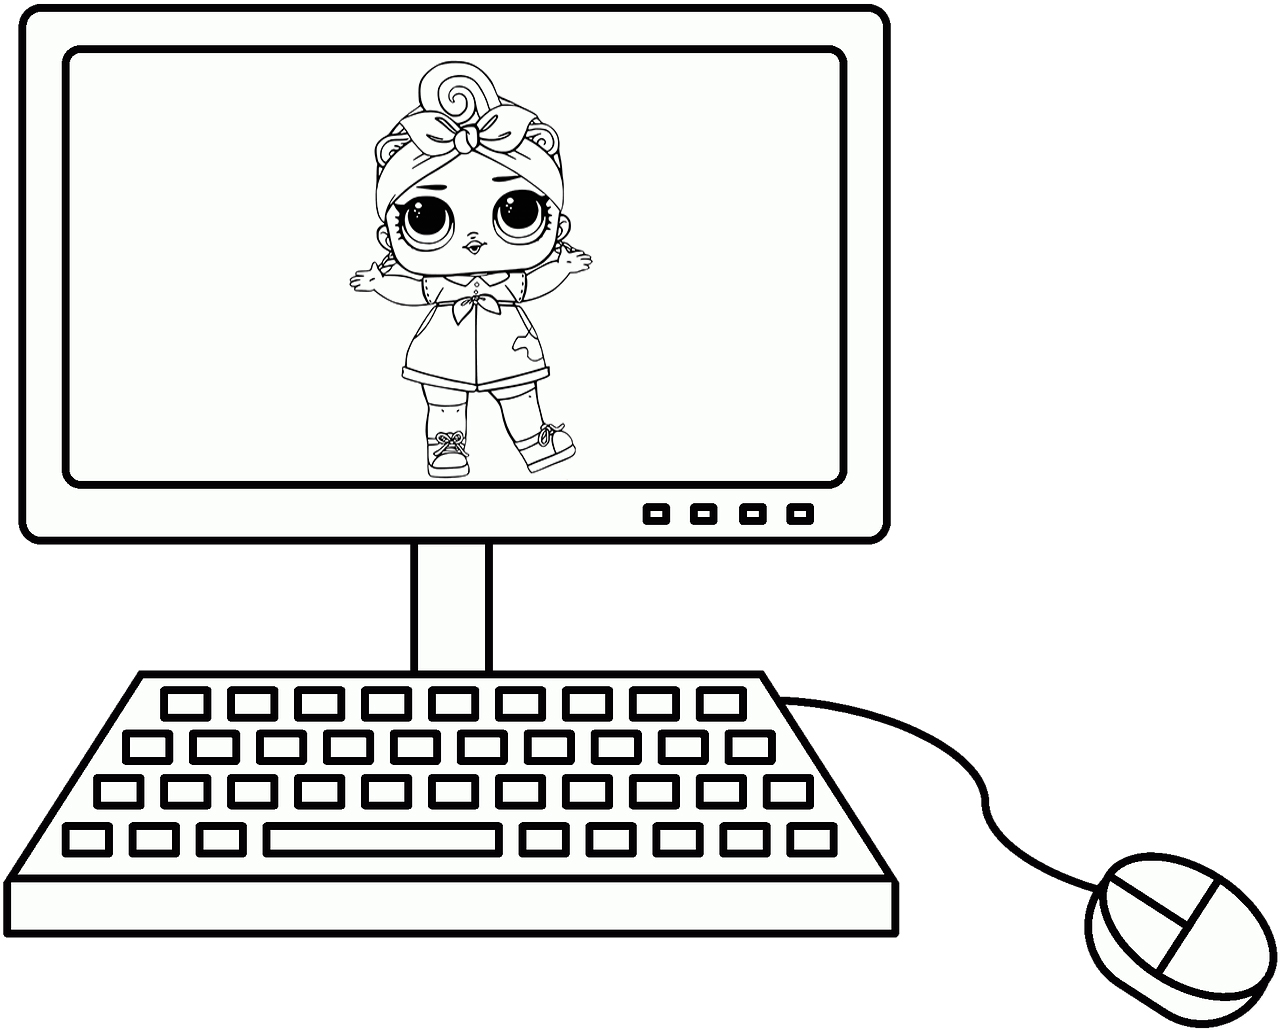 Раскраска для компьютера для девочек. Раскраска компьютер. Компьютер картинка для детей раскраска. Компьютер для раскрашивания для детей. Компьютер разукрашка для детей.